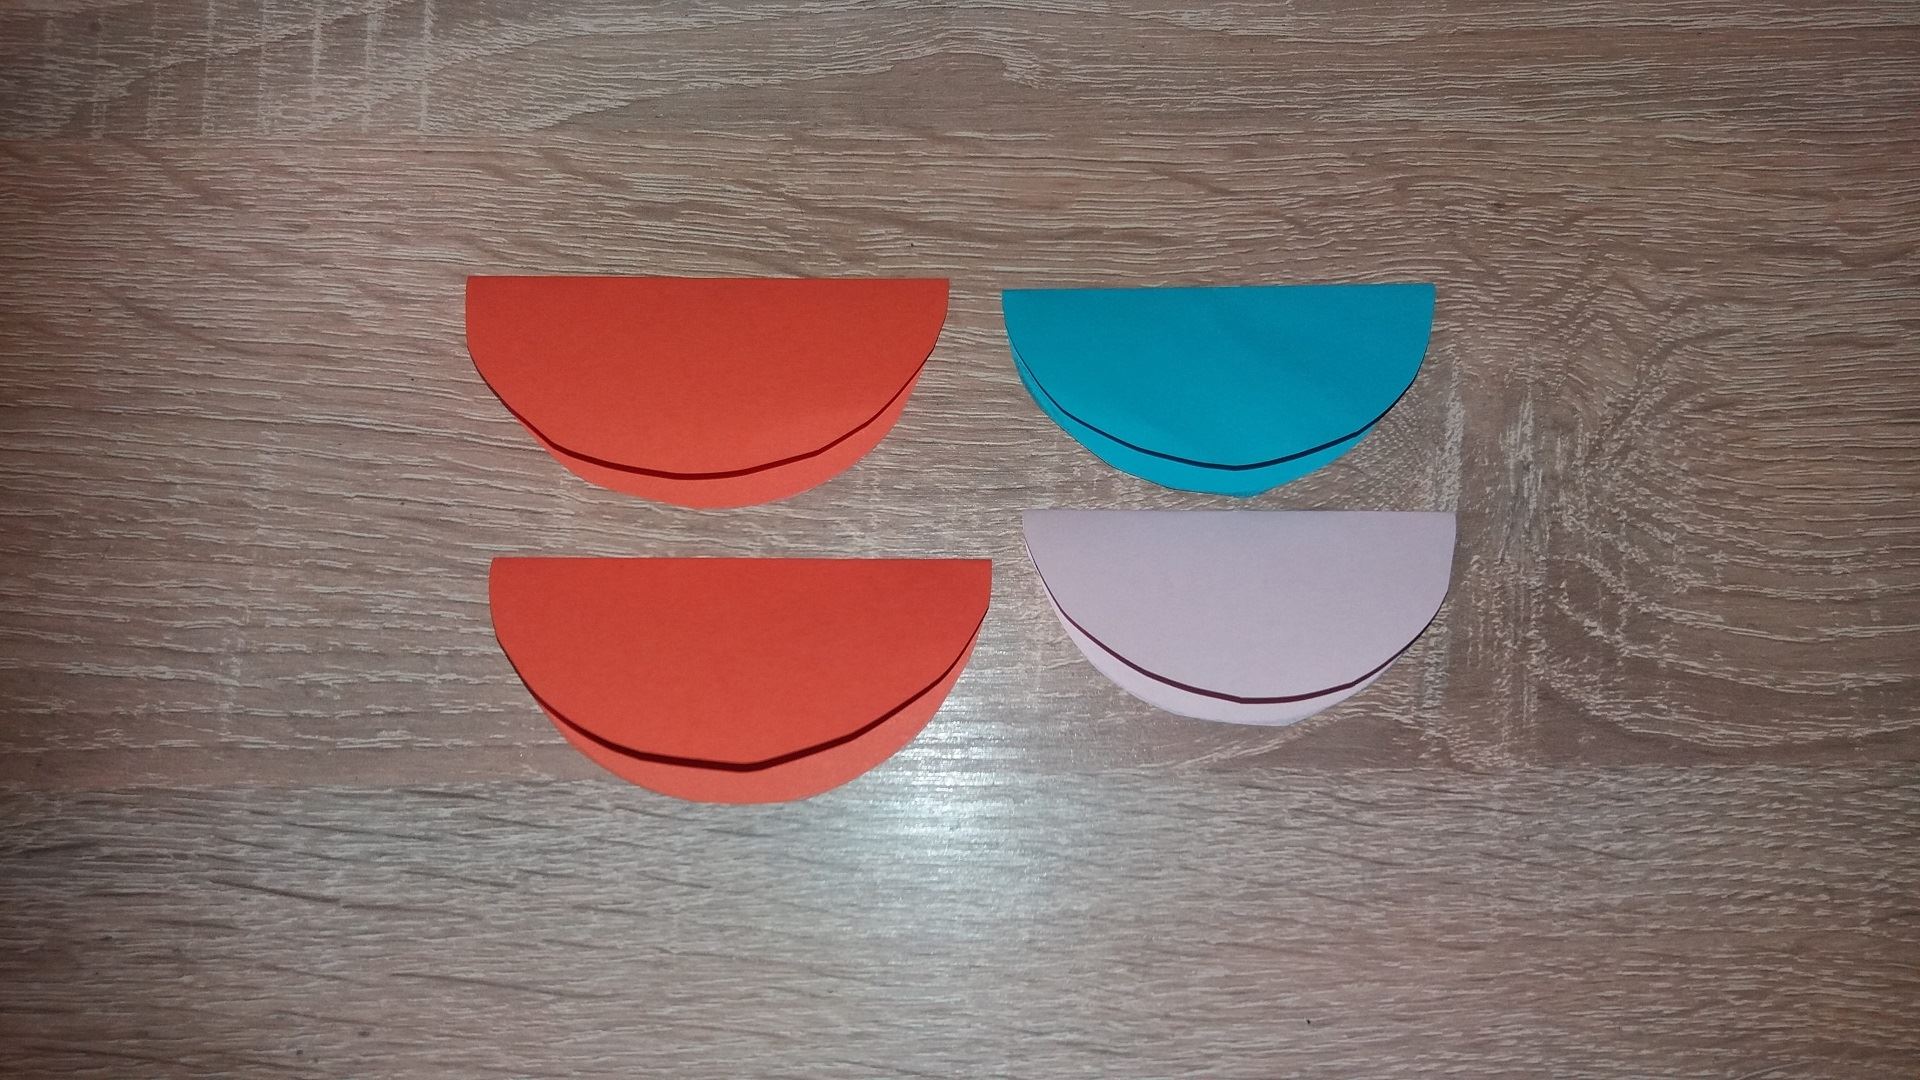 Для начала мы вырезаем 2 одинаковых красных круга, 1 розовый и 1 голубого цвета. Сгибаем эти кружки пополам